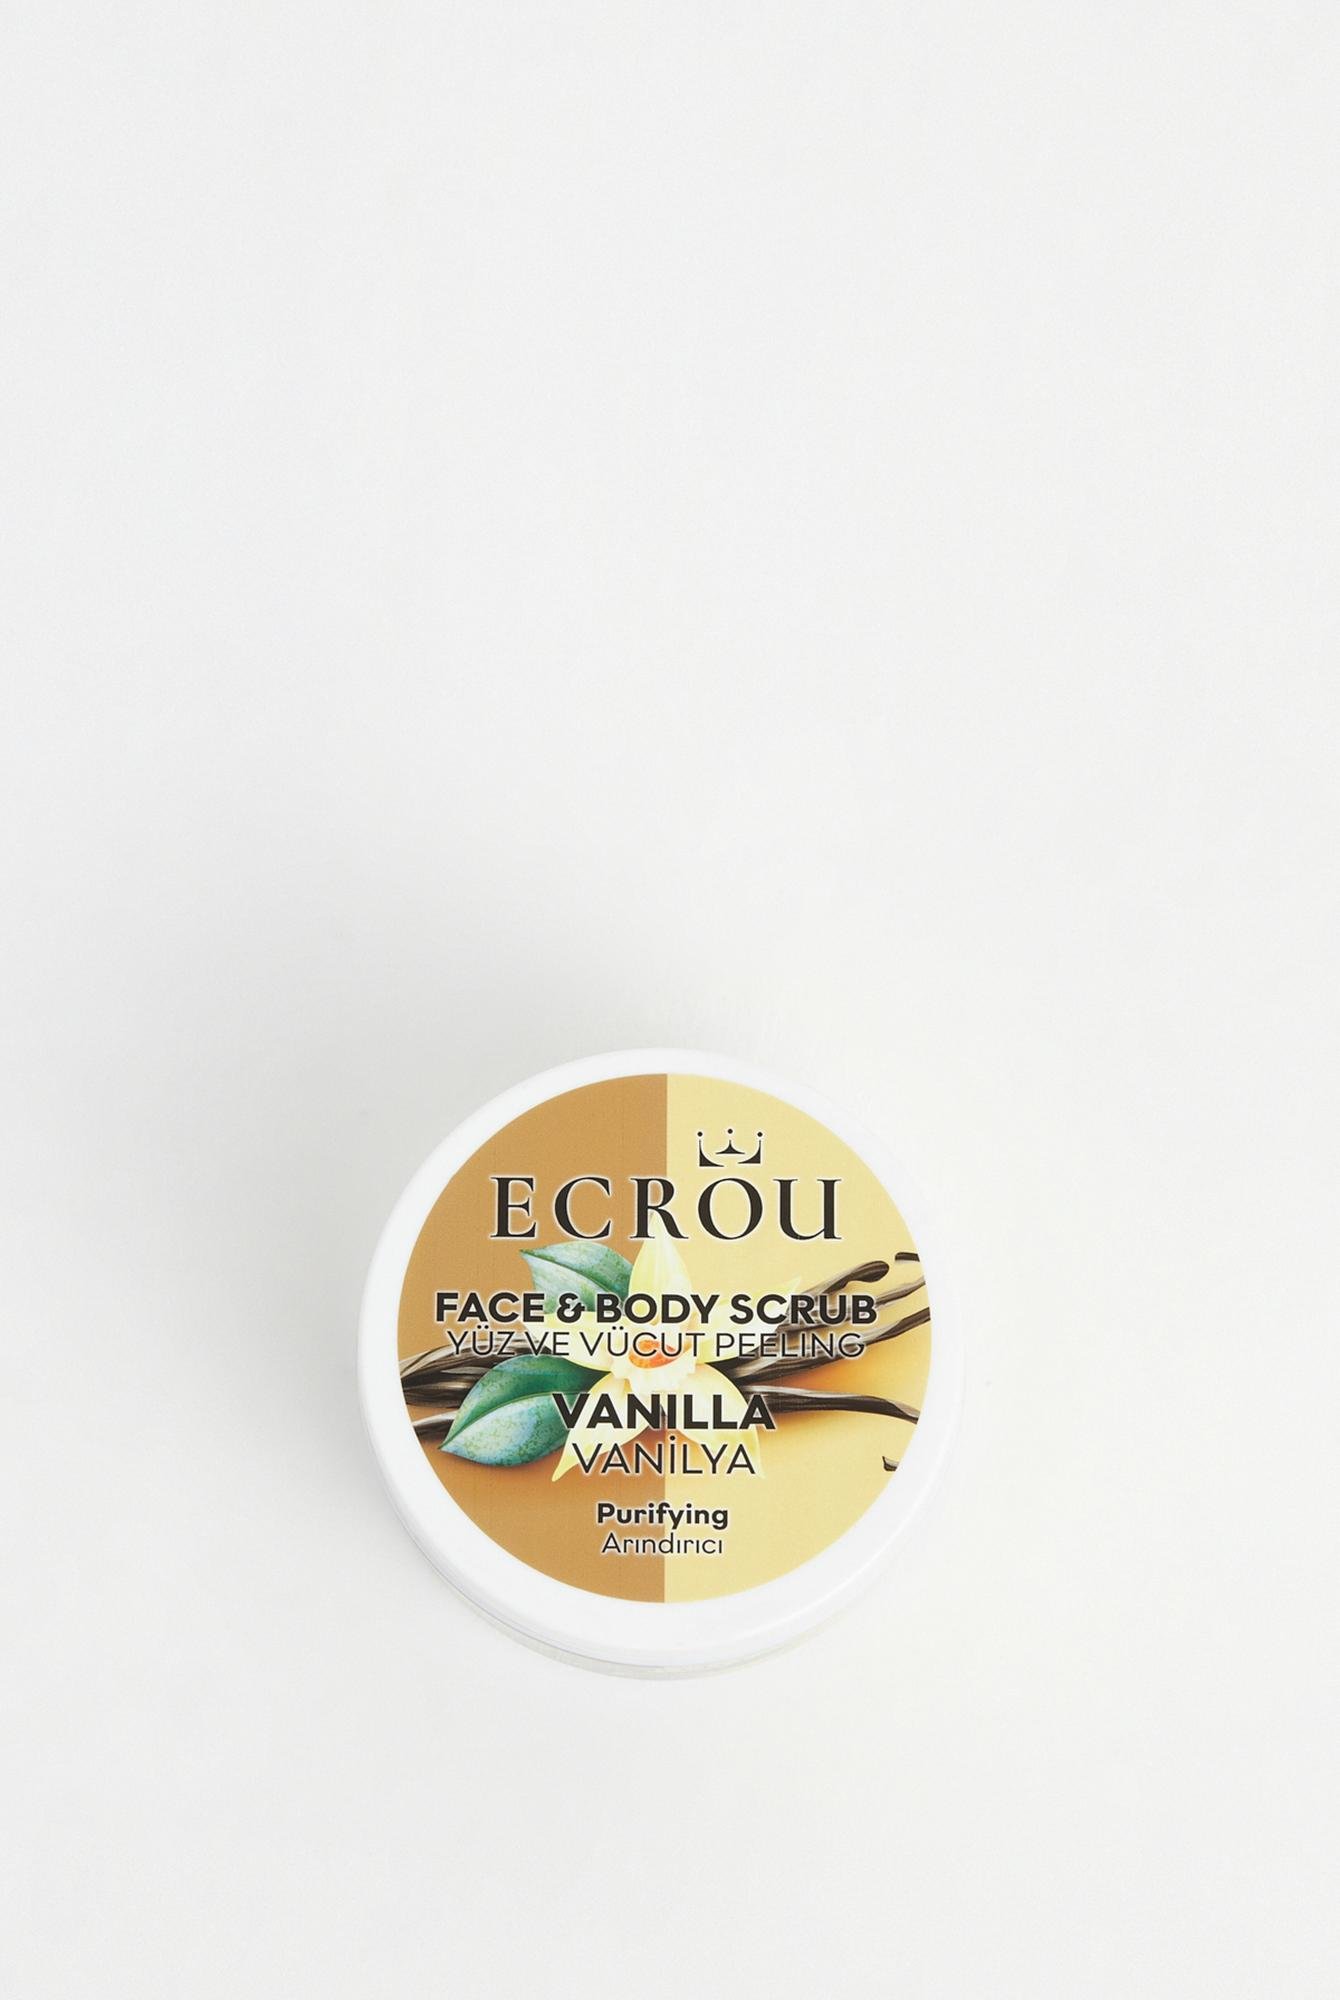  Ecrou Face&Body Scrub Vanilla